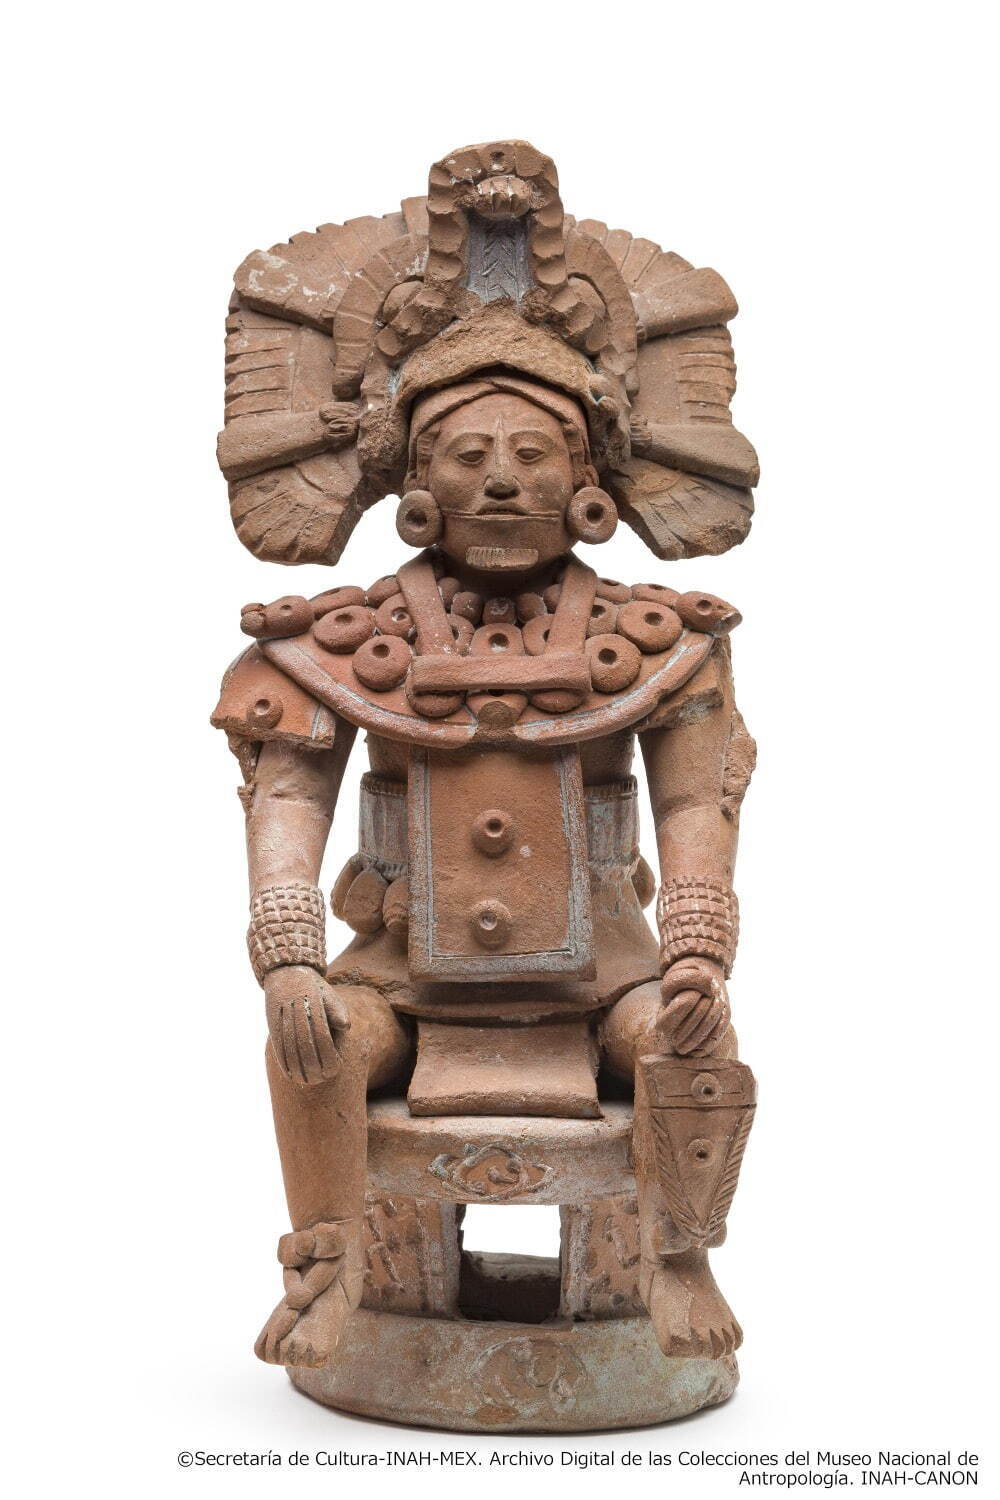 支配者層の土偶
マヤ文明 600-950年 ハイナ出土
メキシコ国立人類学博物館蔵